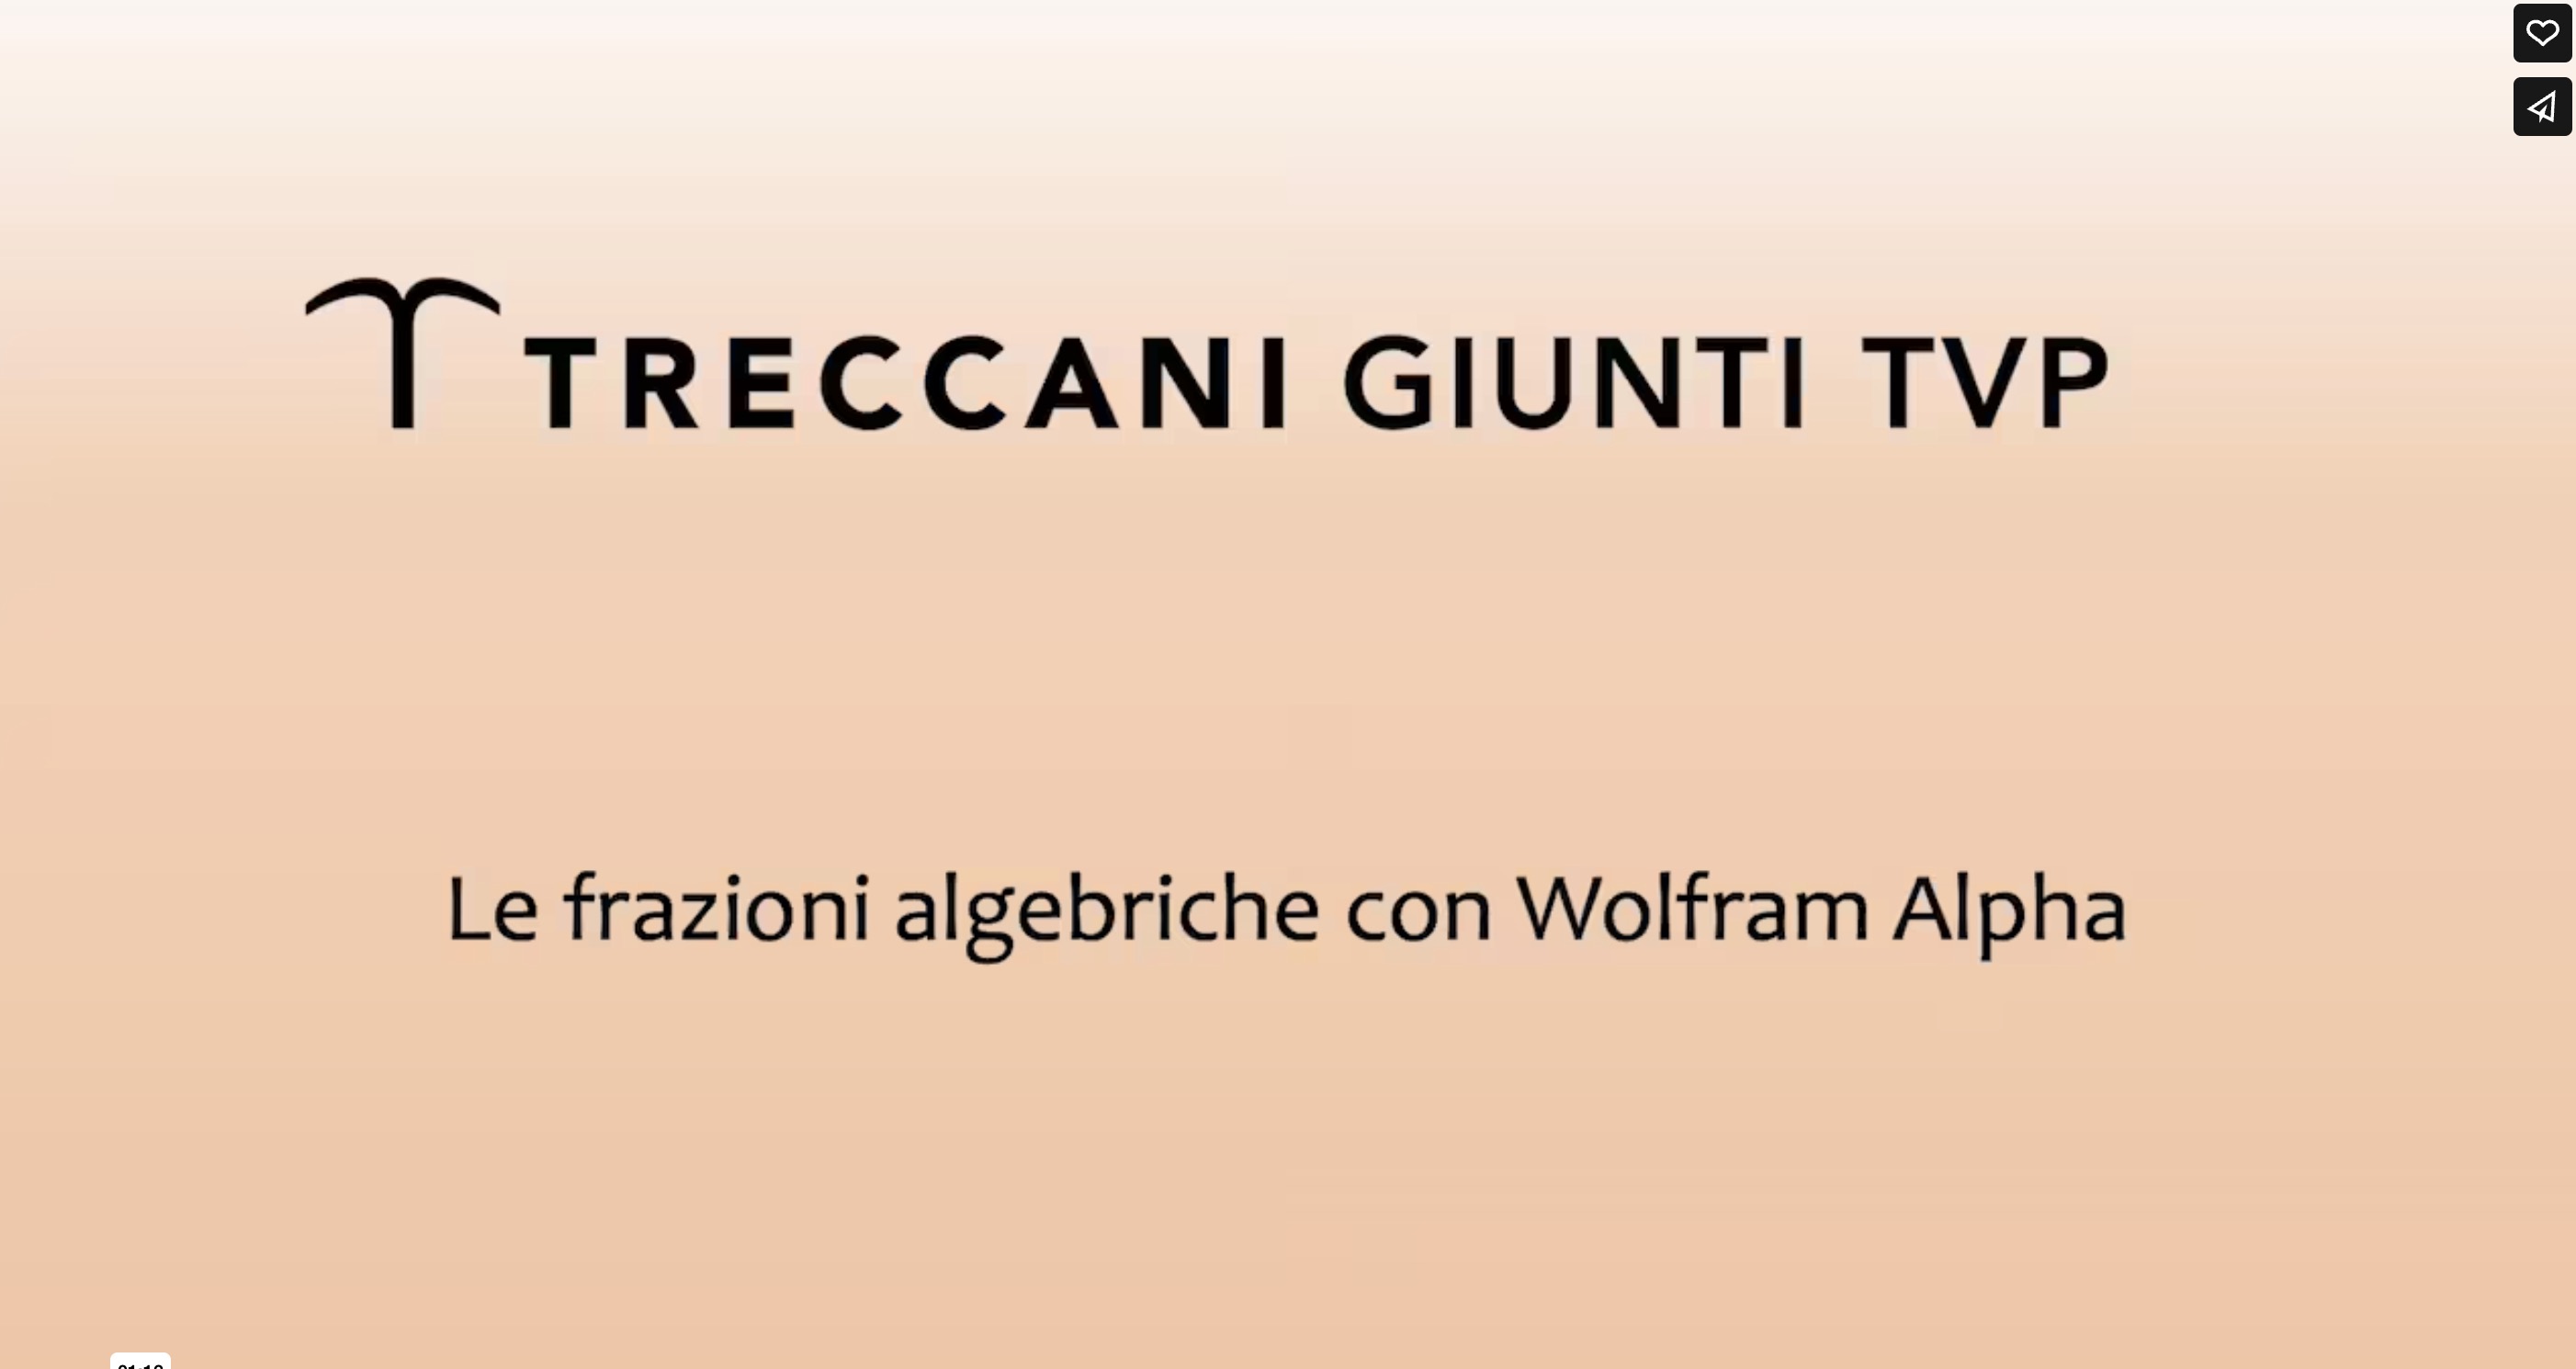 Le frazioni algebriche con Wolfram Alpha